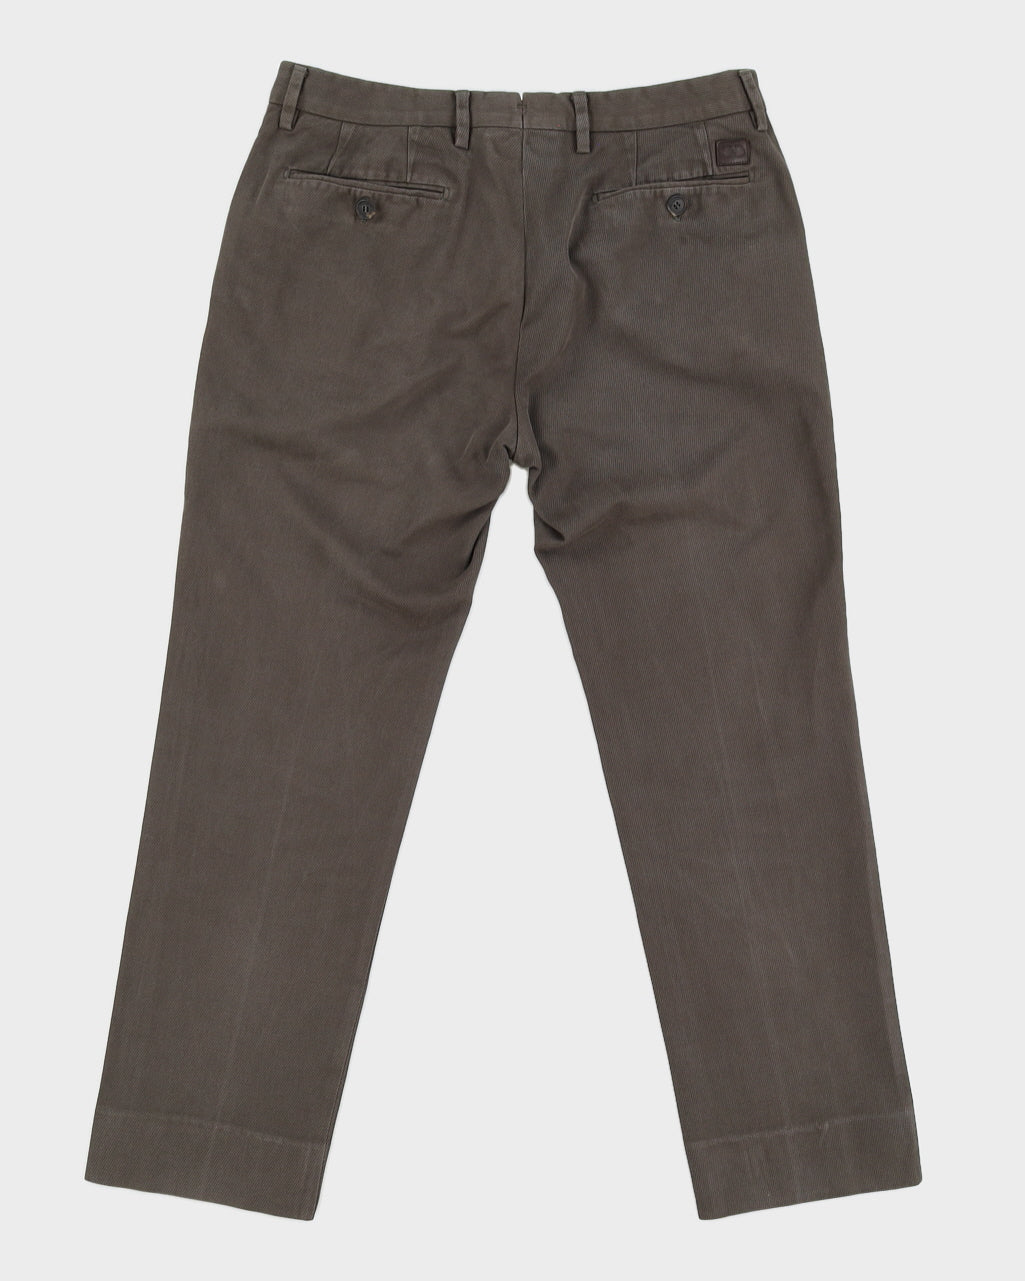 Salvatore Ferragamo Green Trousers - W34 L27